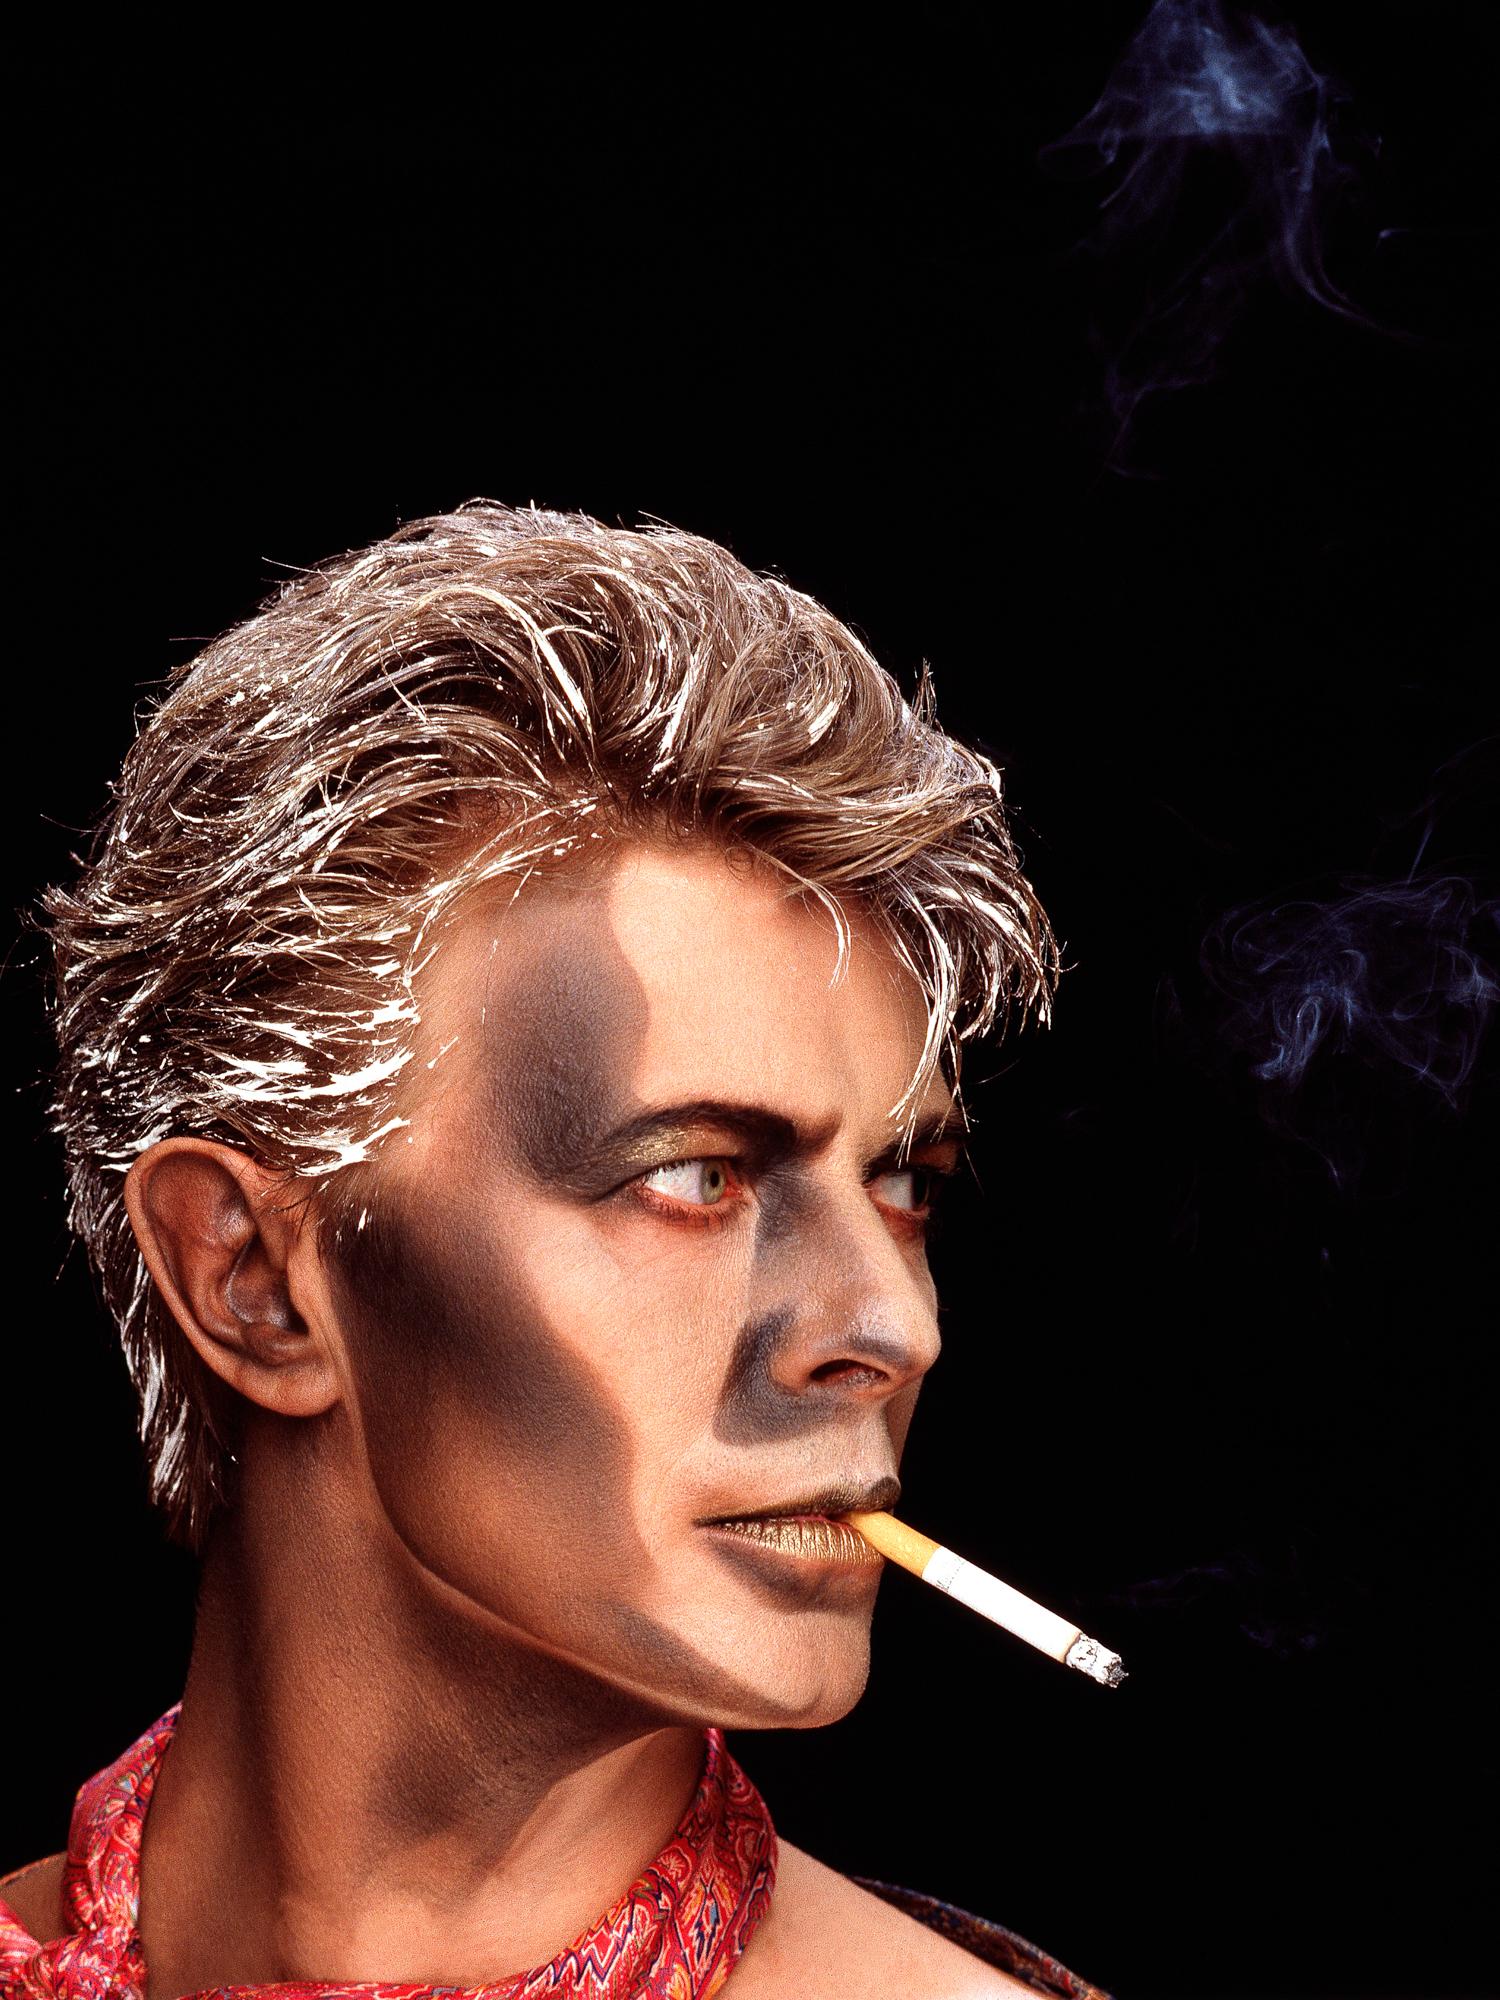 Greg Gorman Portrait Photograph - David Bowie Blue Jean, Contemporary, Celebrity, Photography